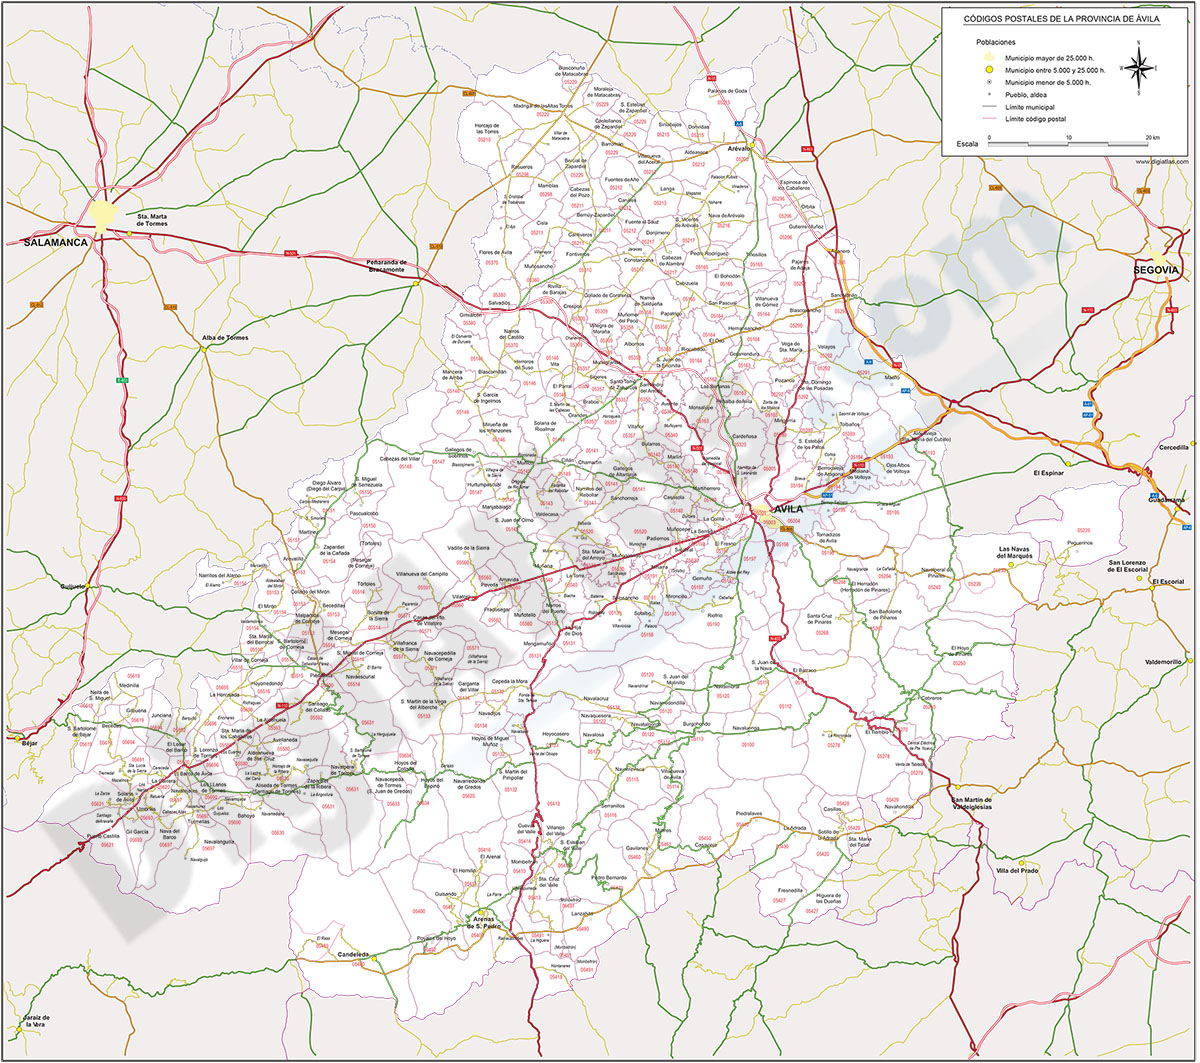 Ávila - mapa provincial con municipios y Códigos Postales